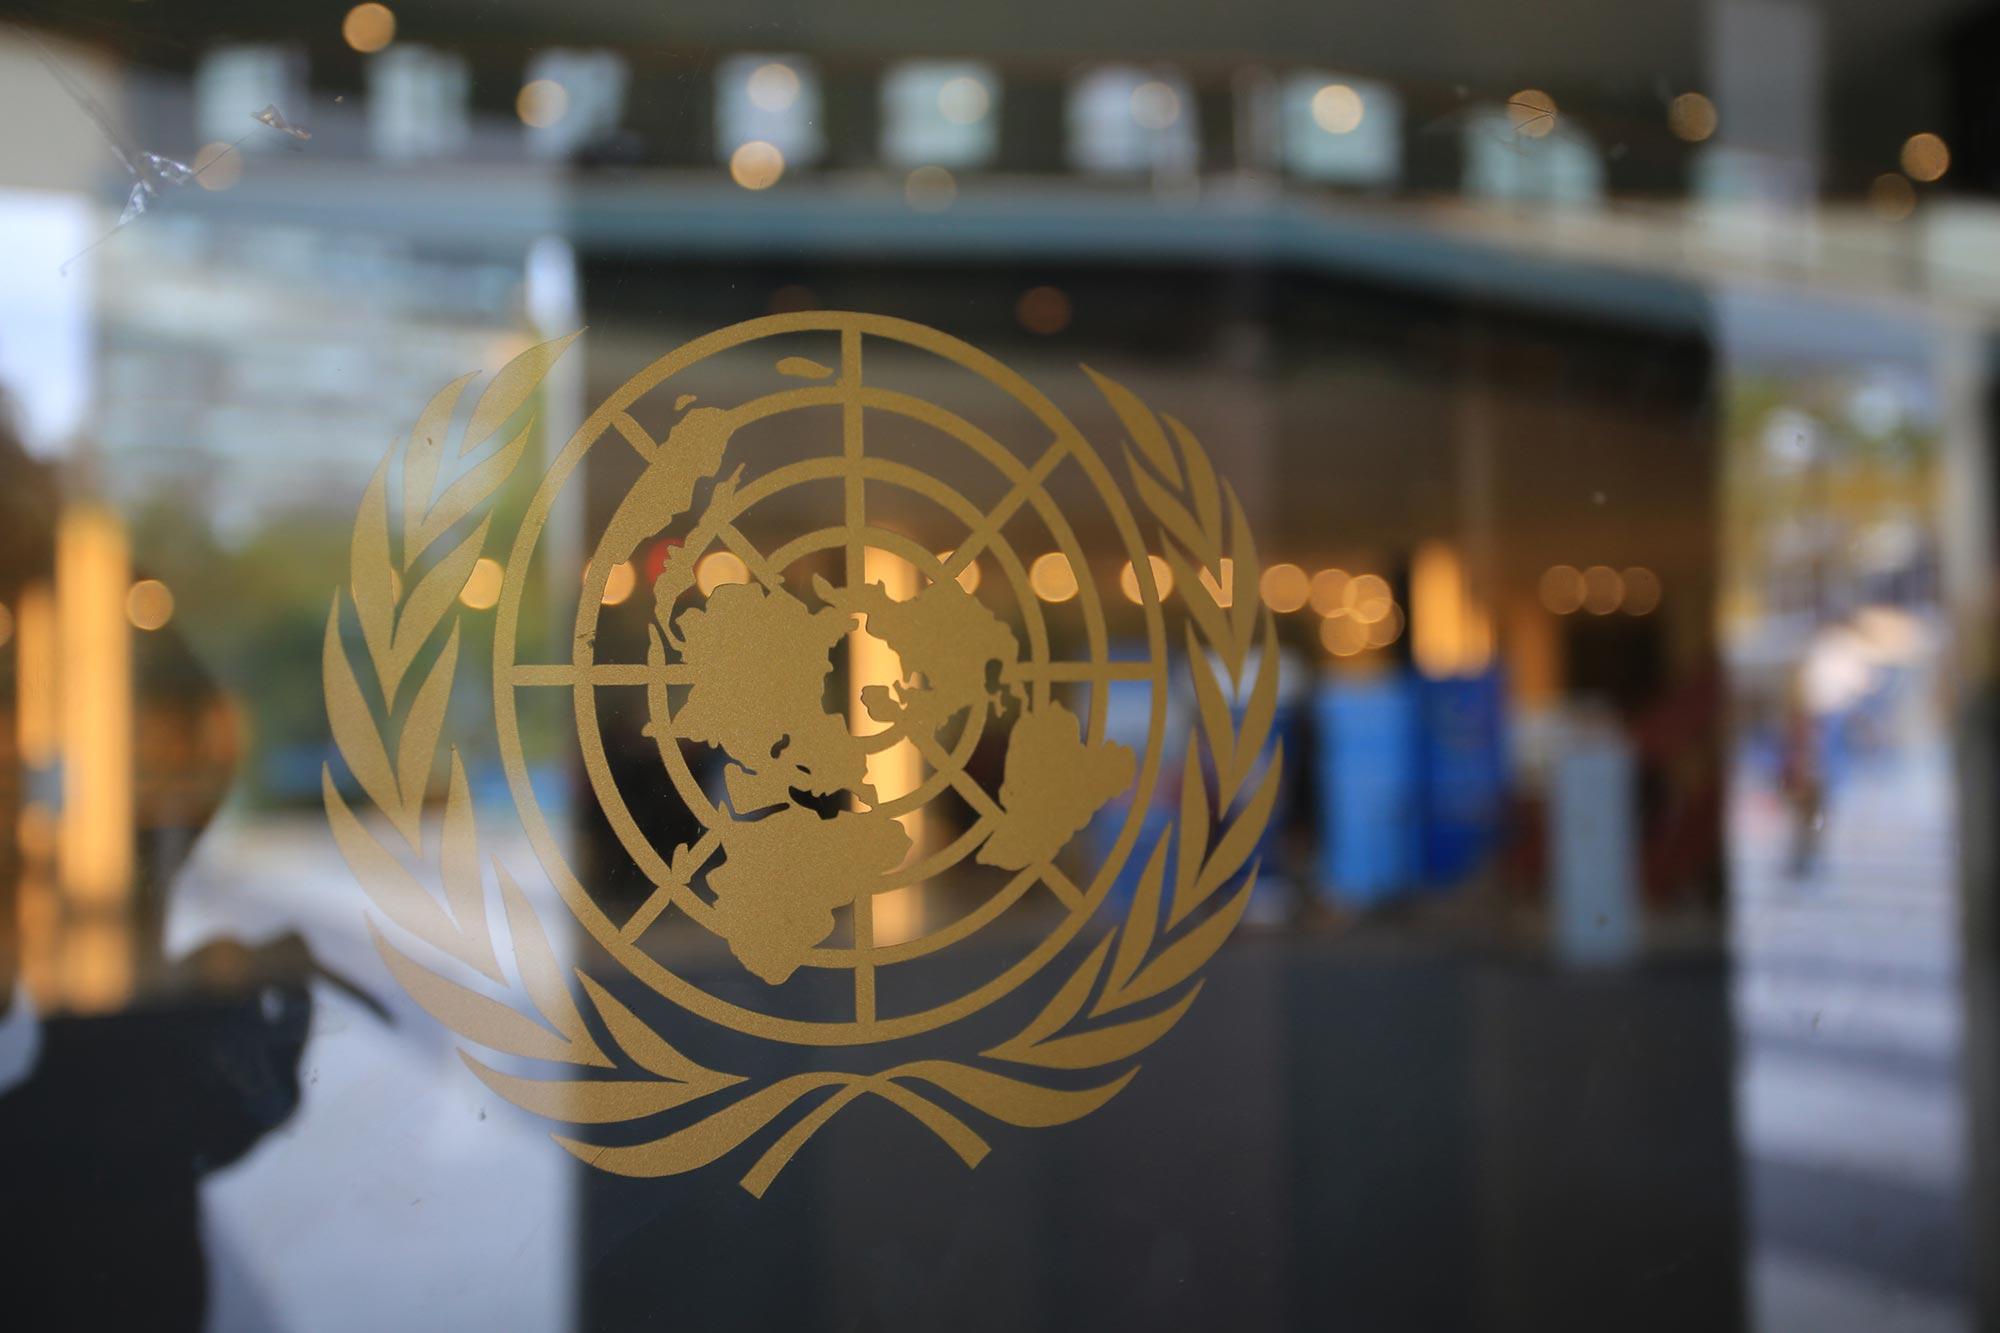 En glasdörr med lgotypen för FN Förenta Nationernas jordglob och olivkvist Akavia Aspekt